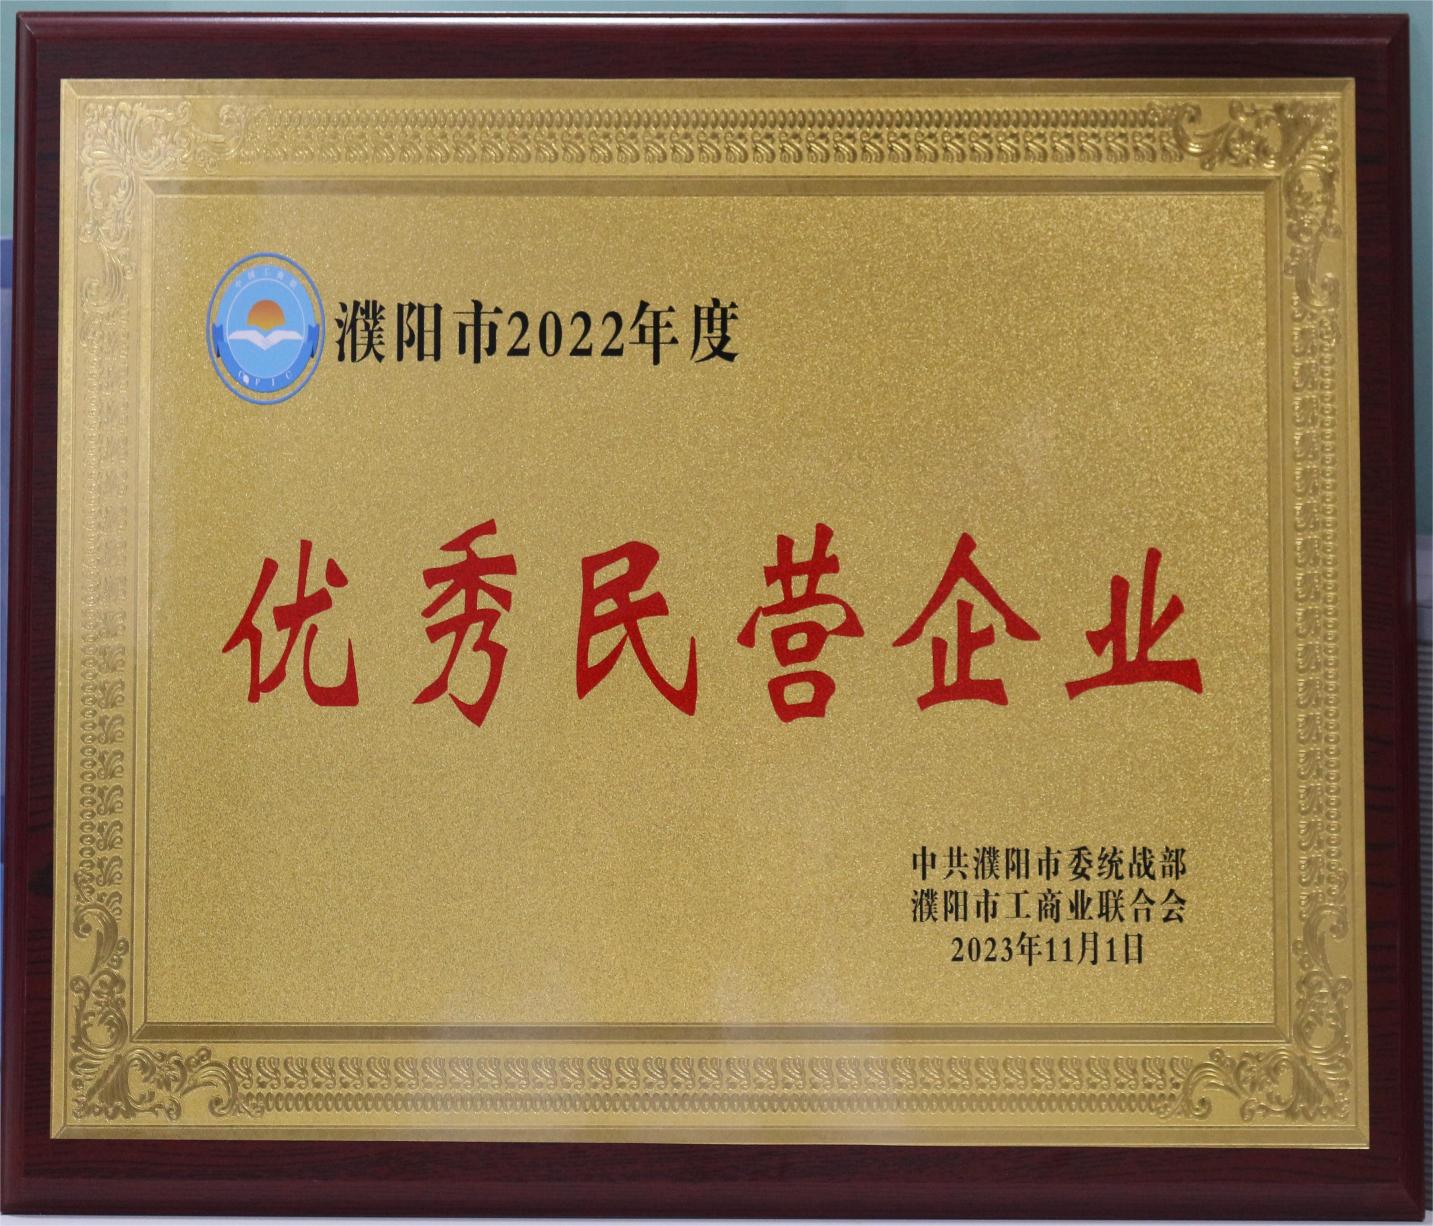 我公司荣获 “2022年度濮阳市优秀民营企业”三项称号